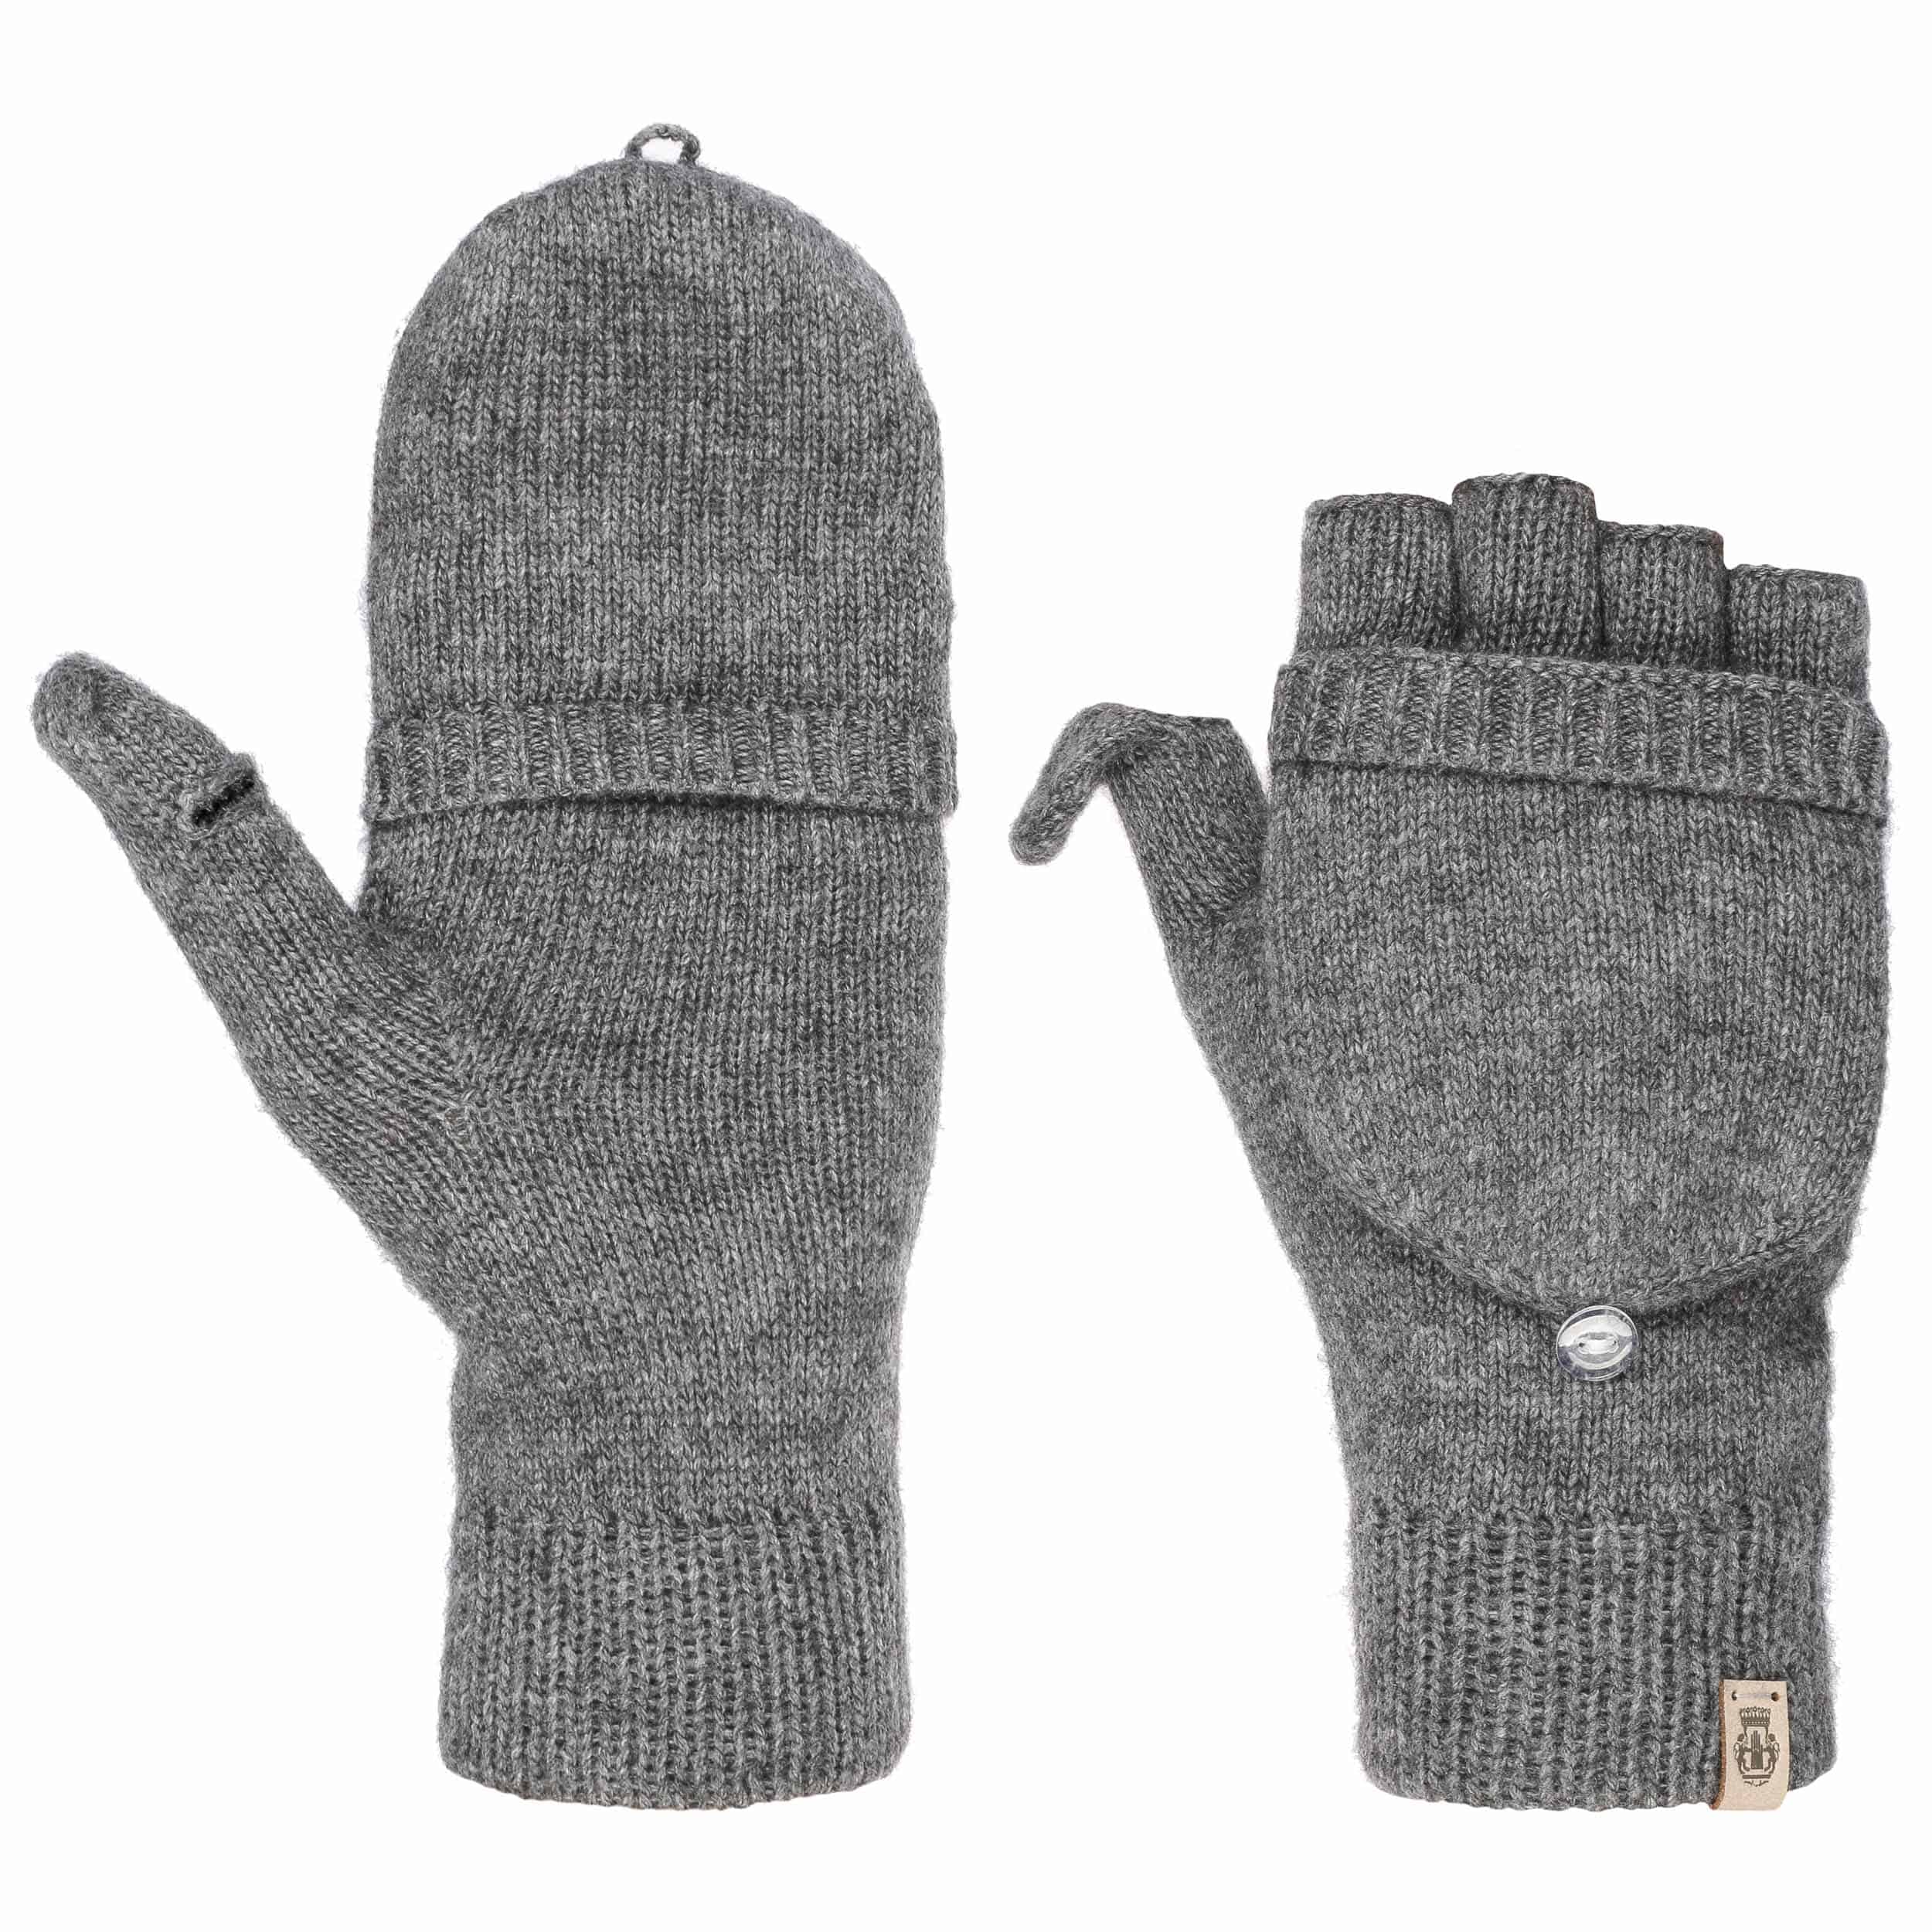 fingerless gloves with hood